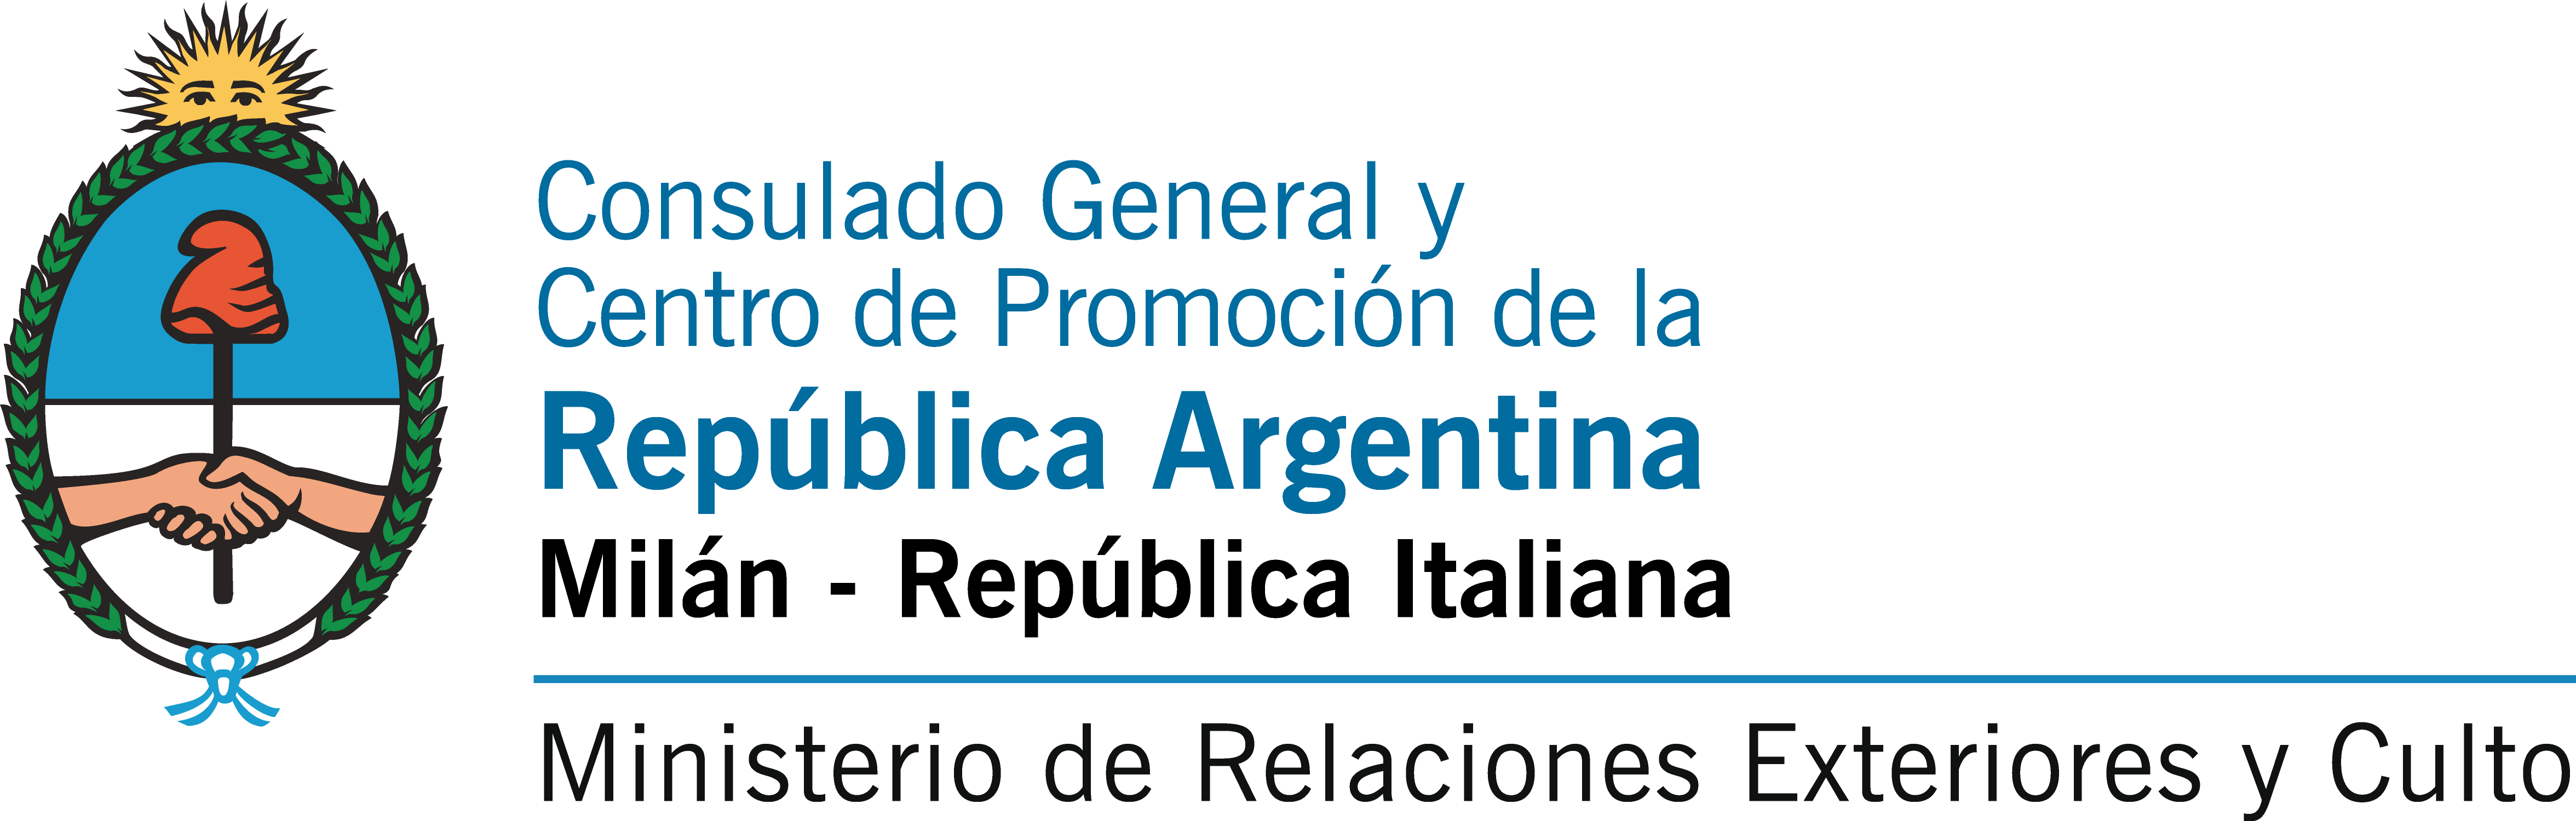 Consulado General de Argentina (Milán)